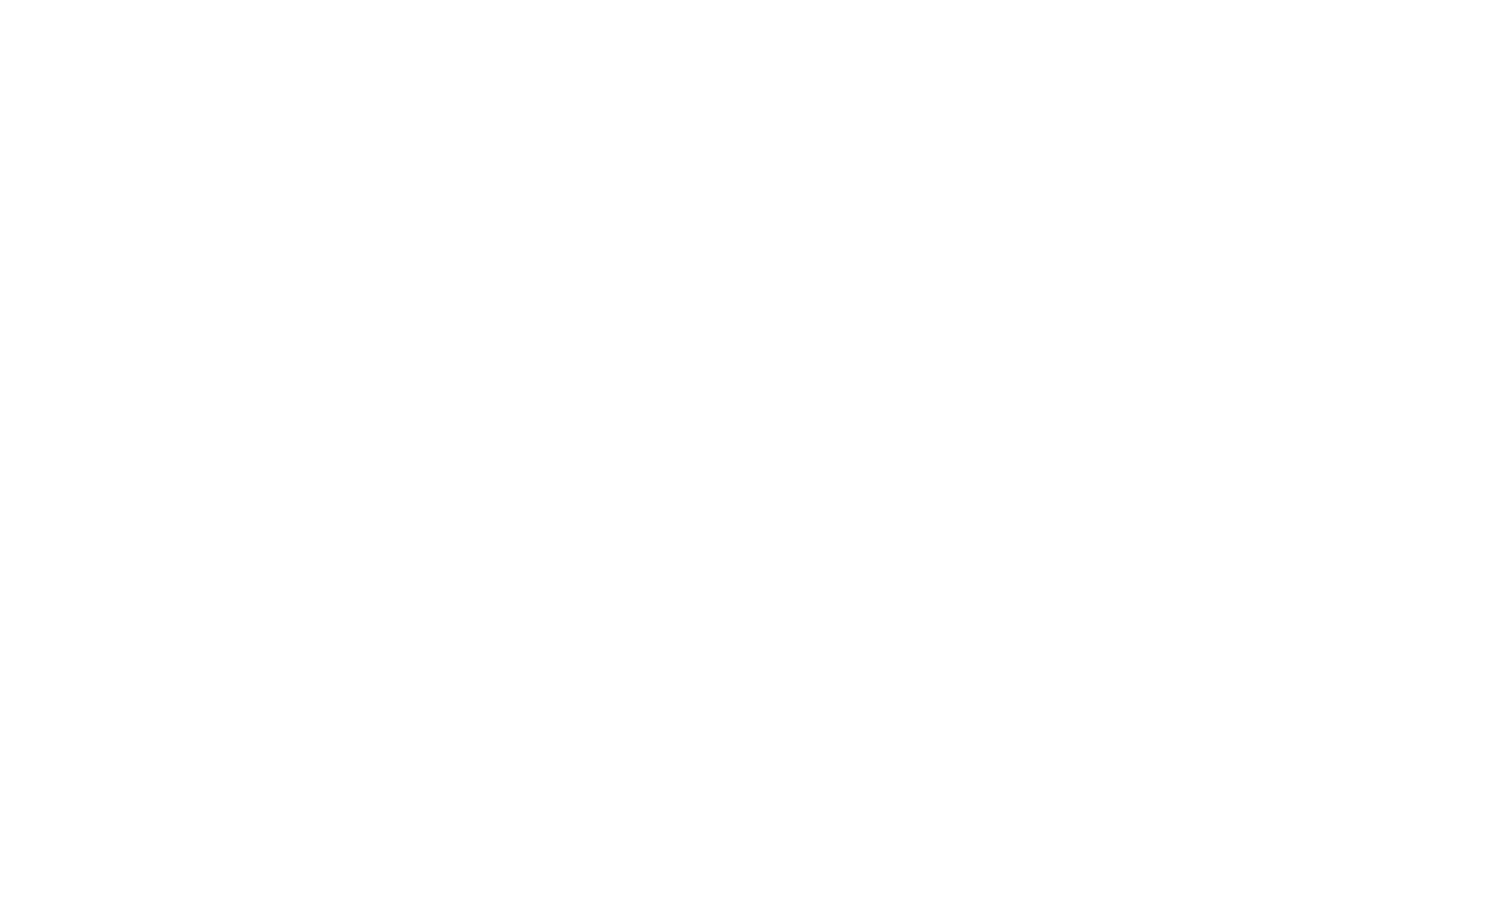 grid lines